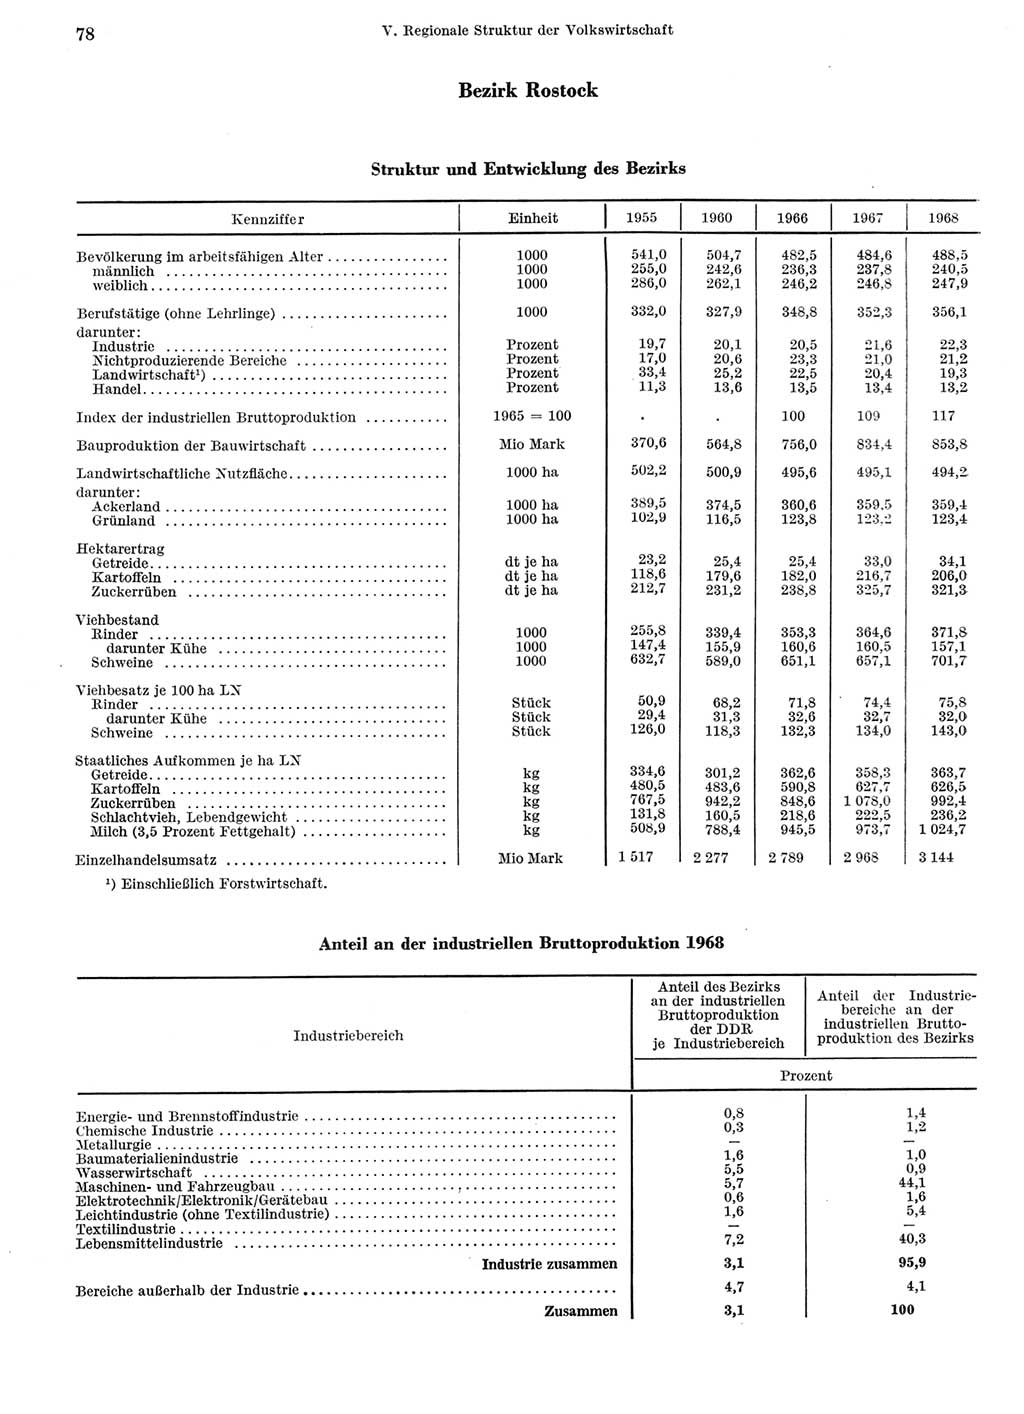 Statistisches Jahrbuch der Deutschen Demokratischen Republik (DDR) 1969, Seite 78 (Stat. Jb. DDR 1969, S. 78)